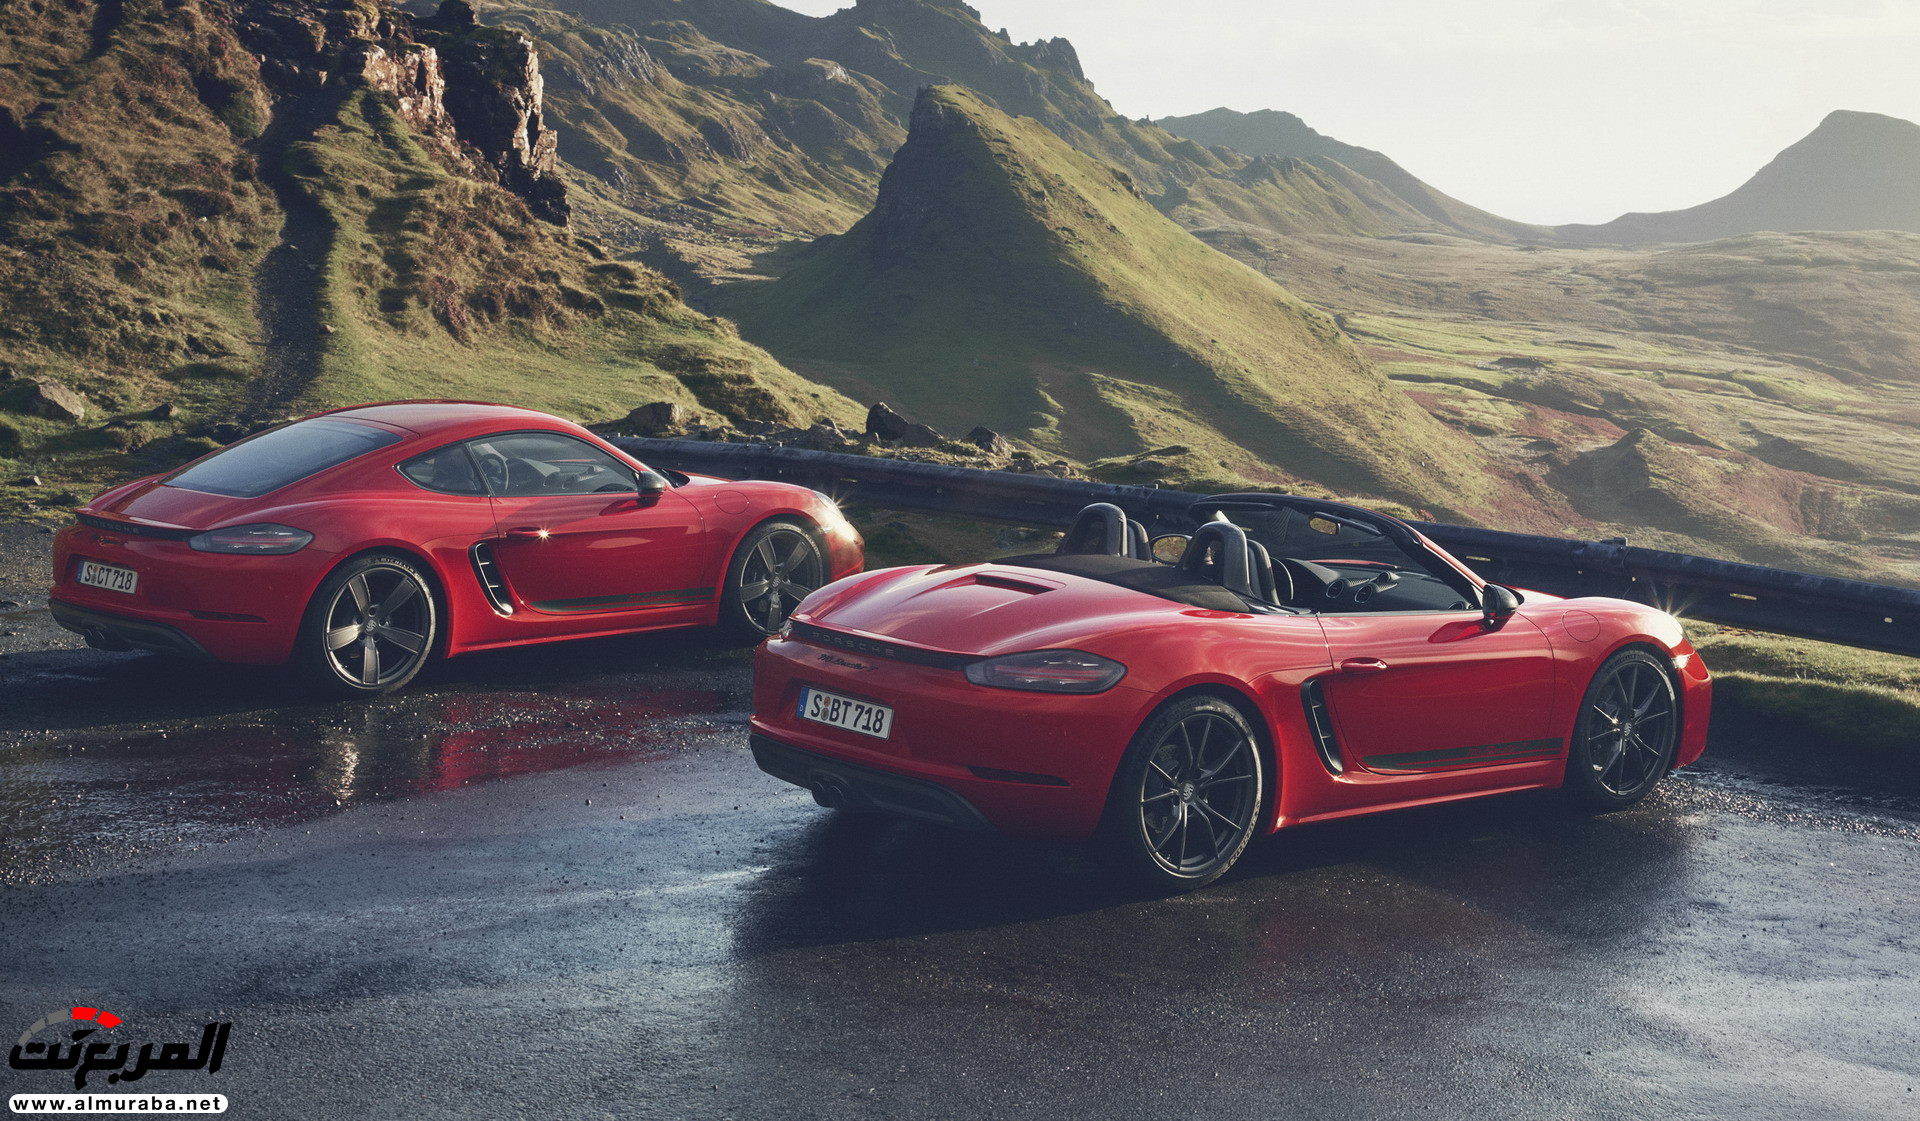 “بالصور” الدليل الشامل لأبرز السيارات التي ستنطلق في معرض جنيف للسيارات 2019 33